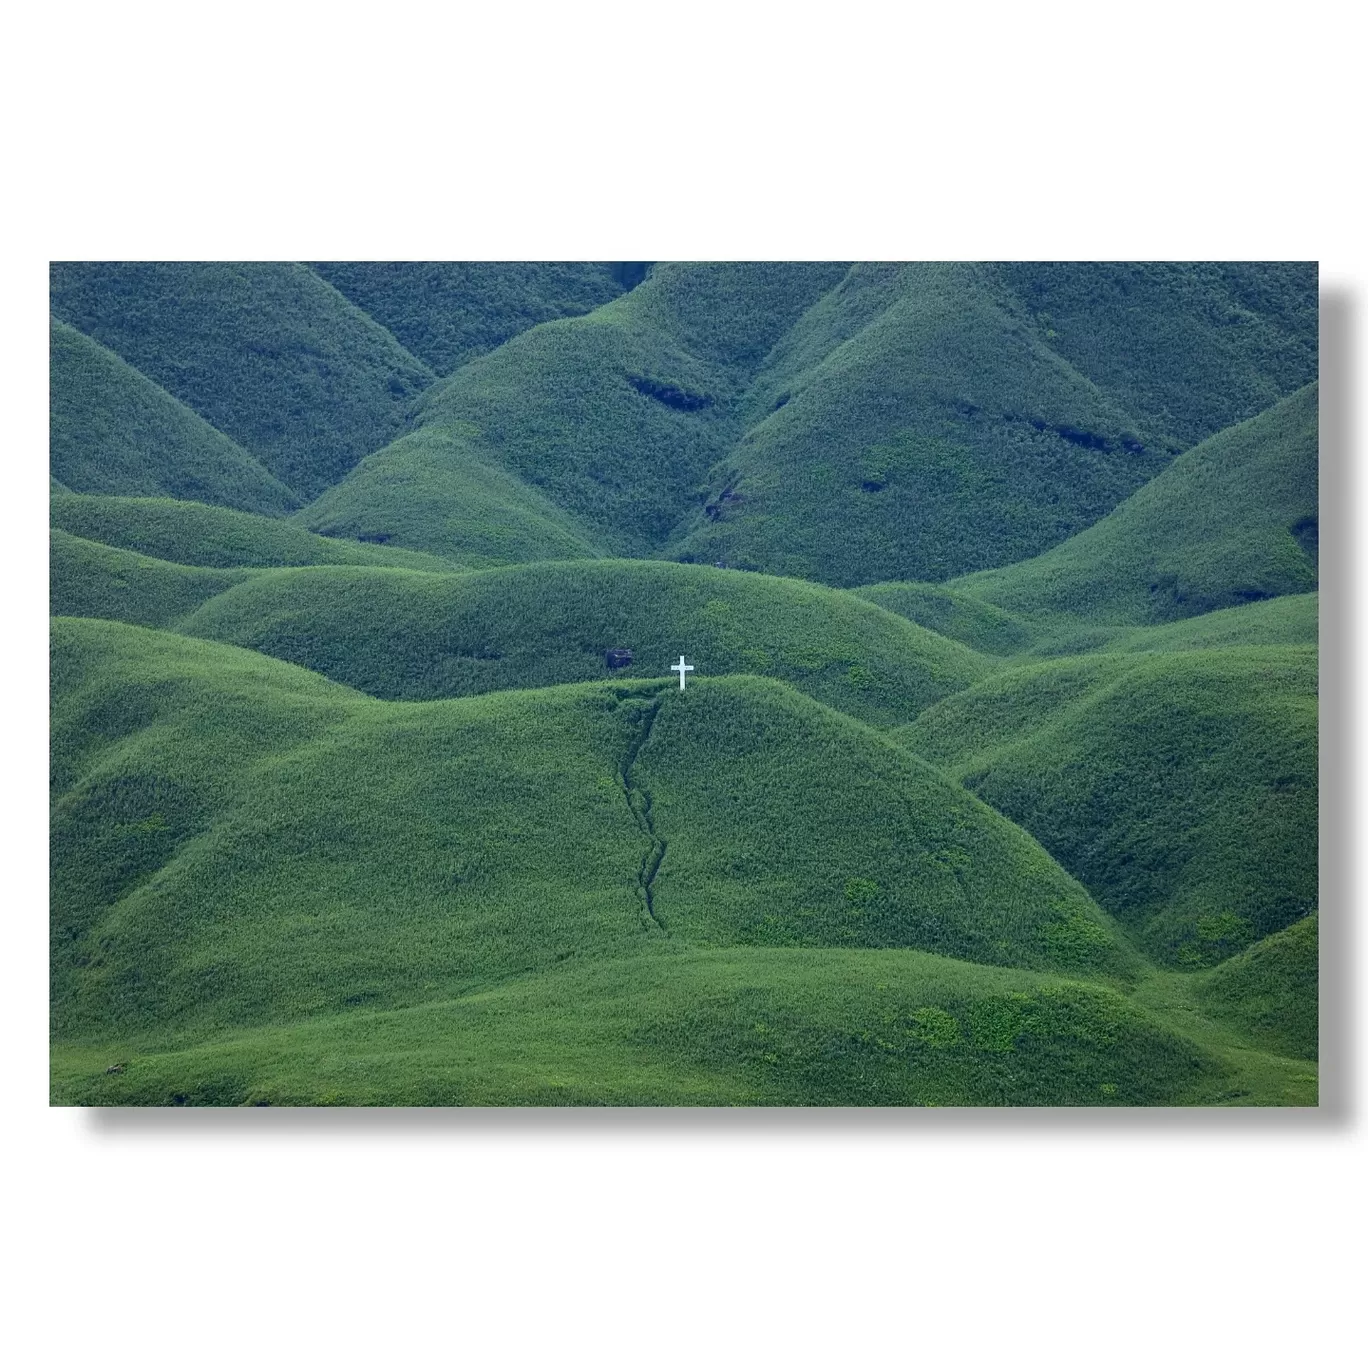 Photo of Dzükou Valley By Puneet Verma